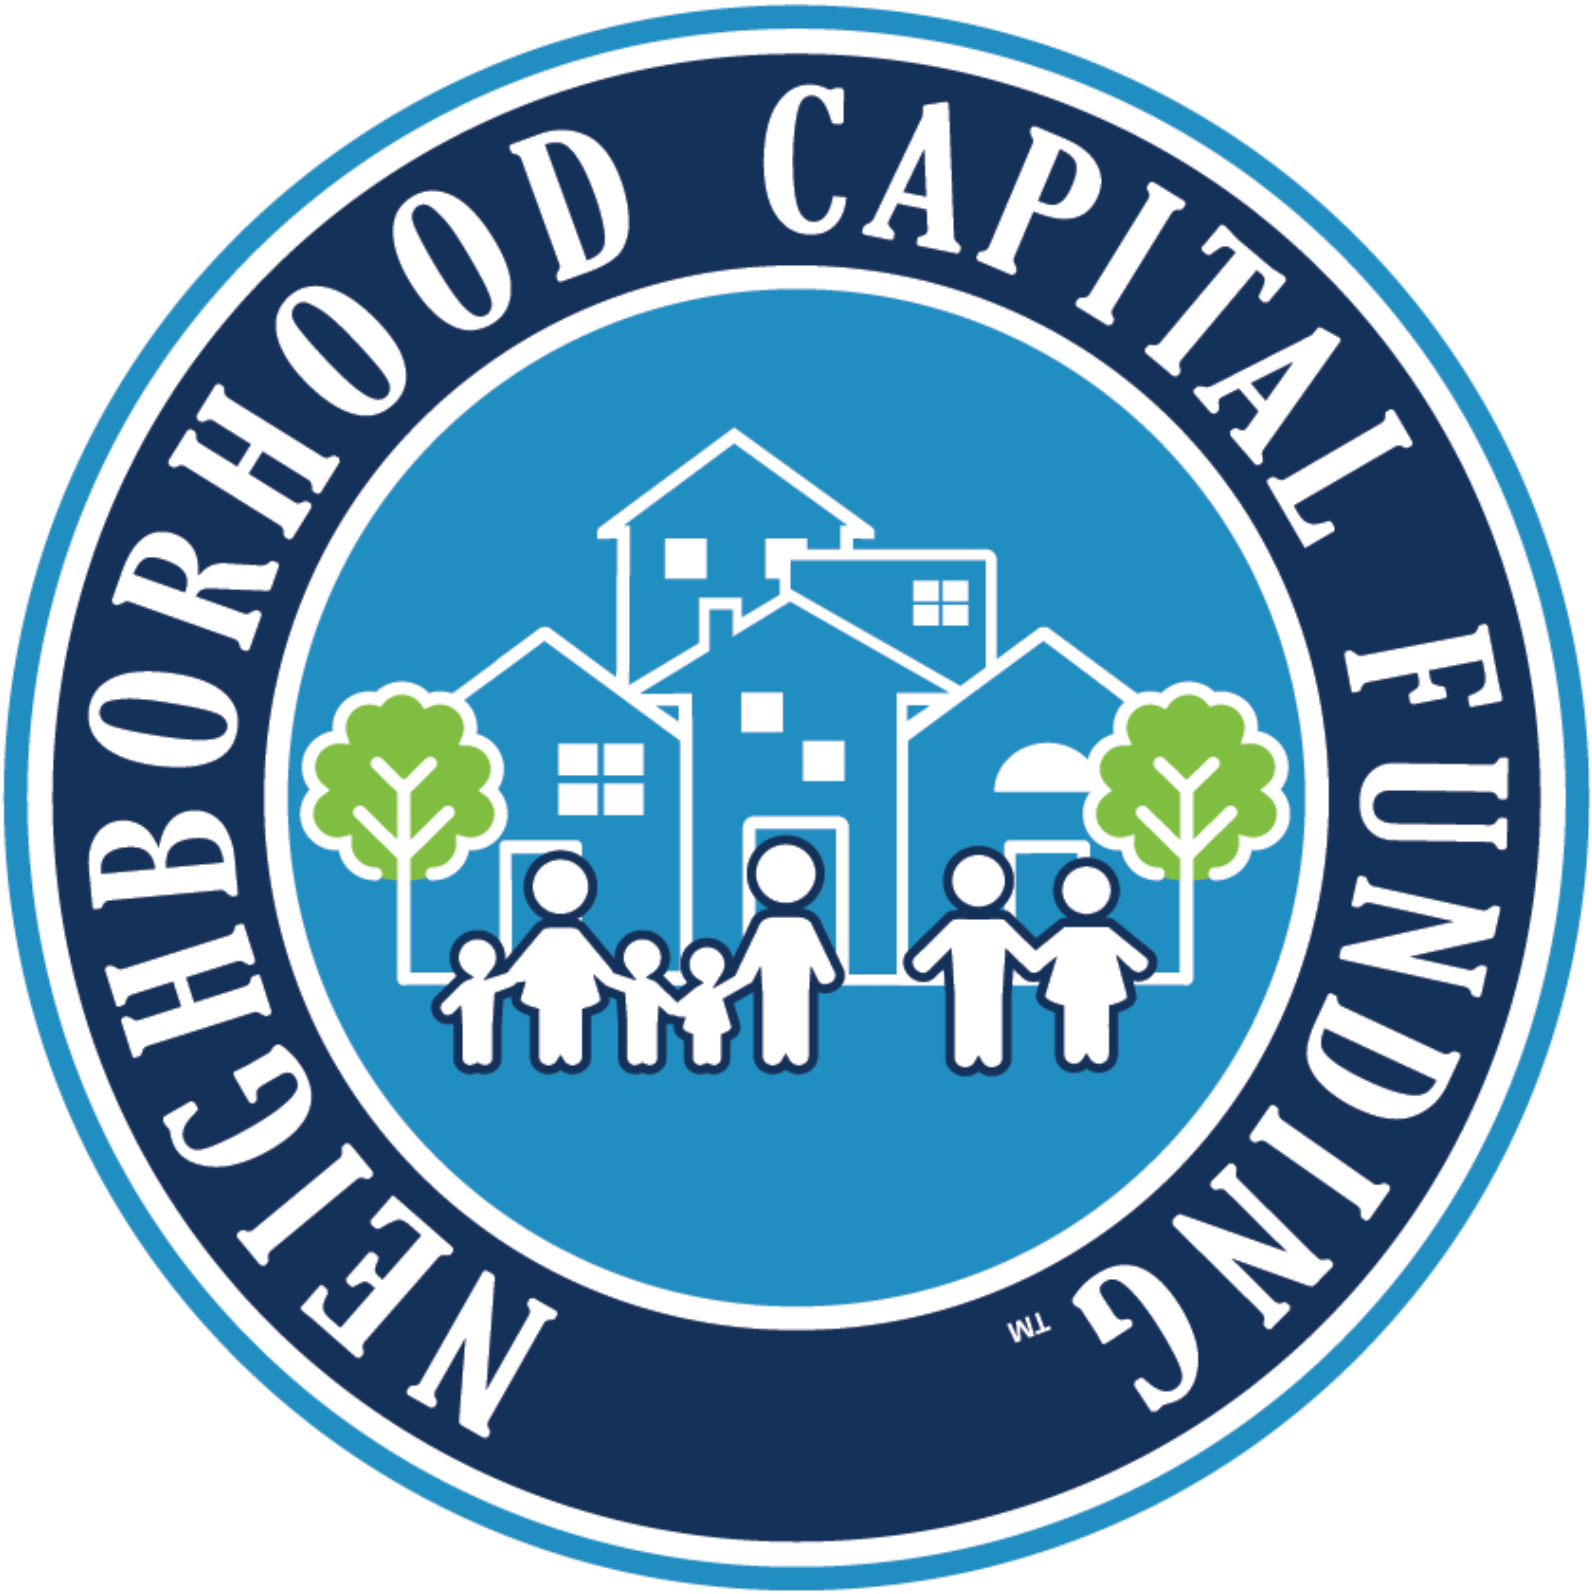 Neighborhood Capital Funding